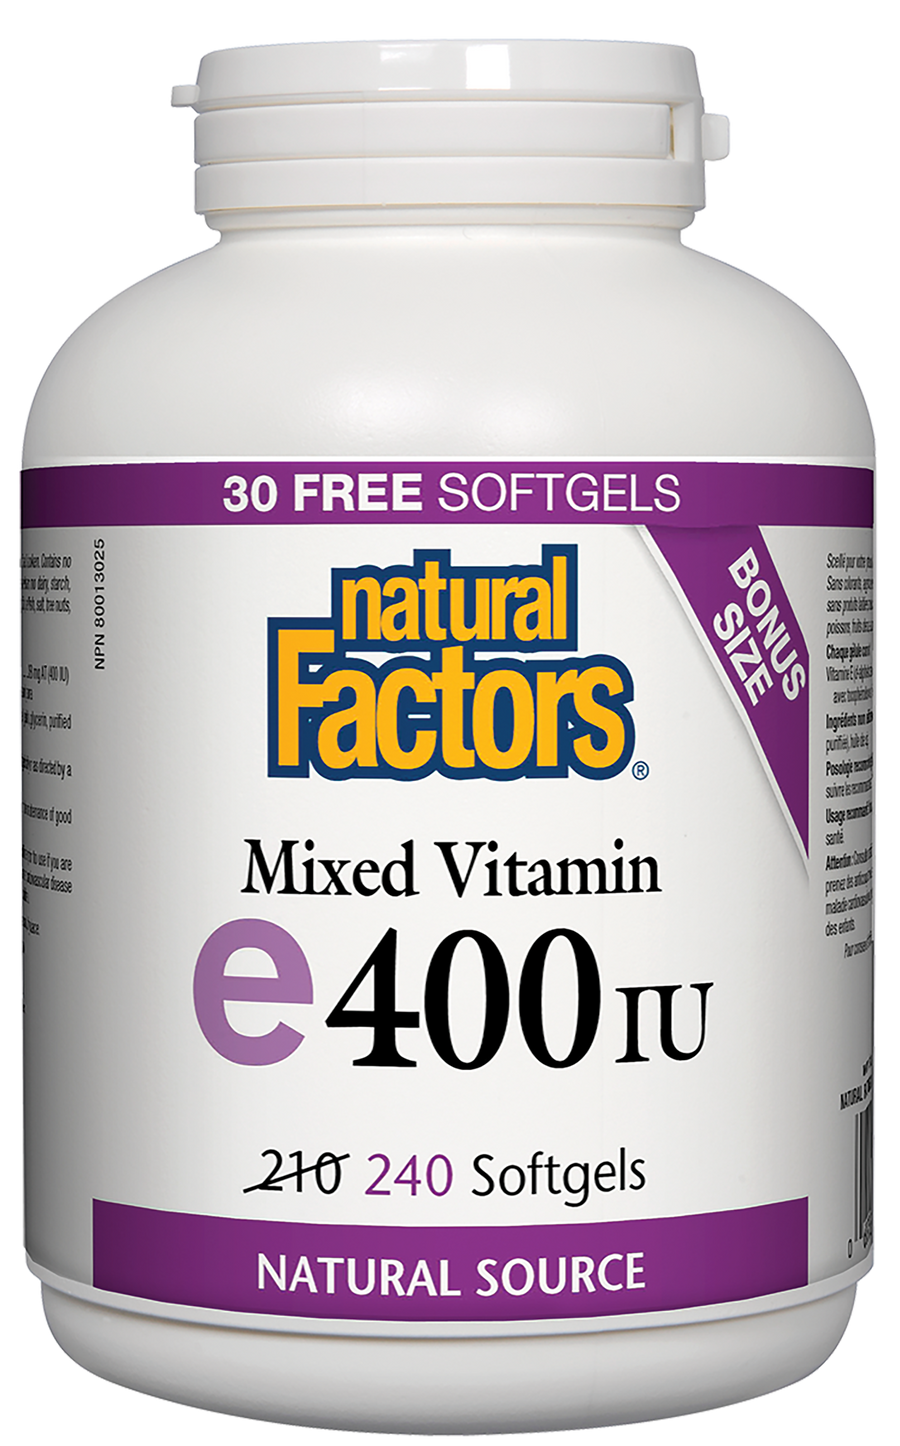 Natural Factors Mixed Vitamin E 400 IU 240 Softgels